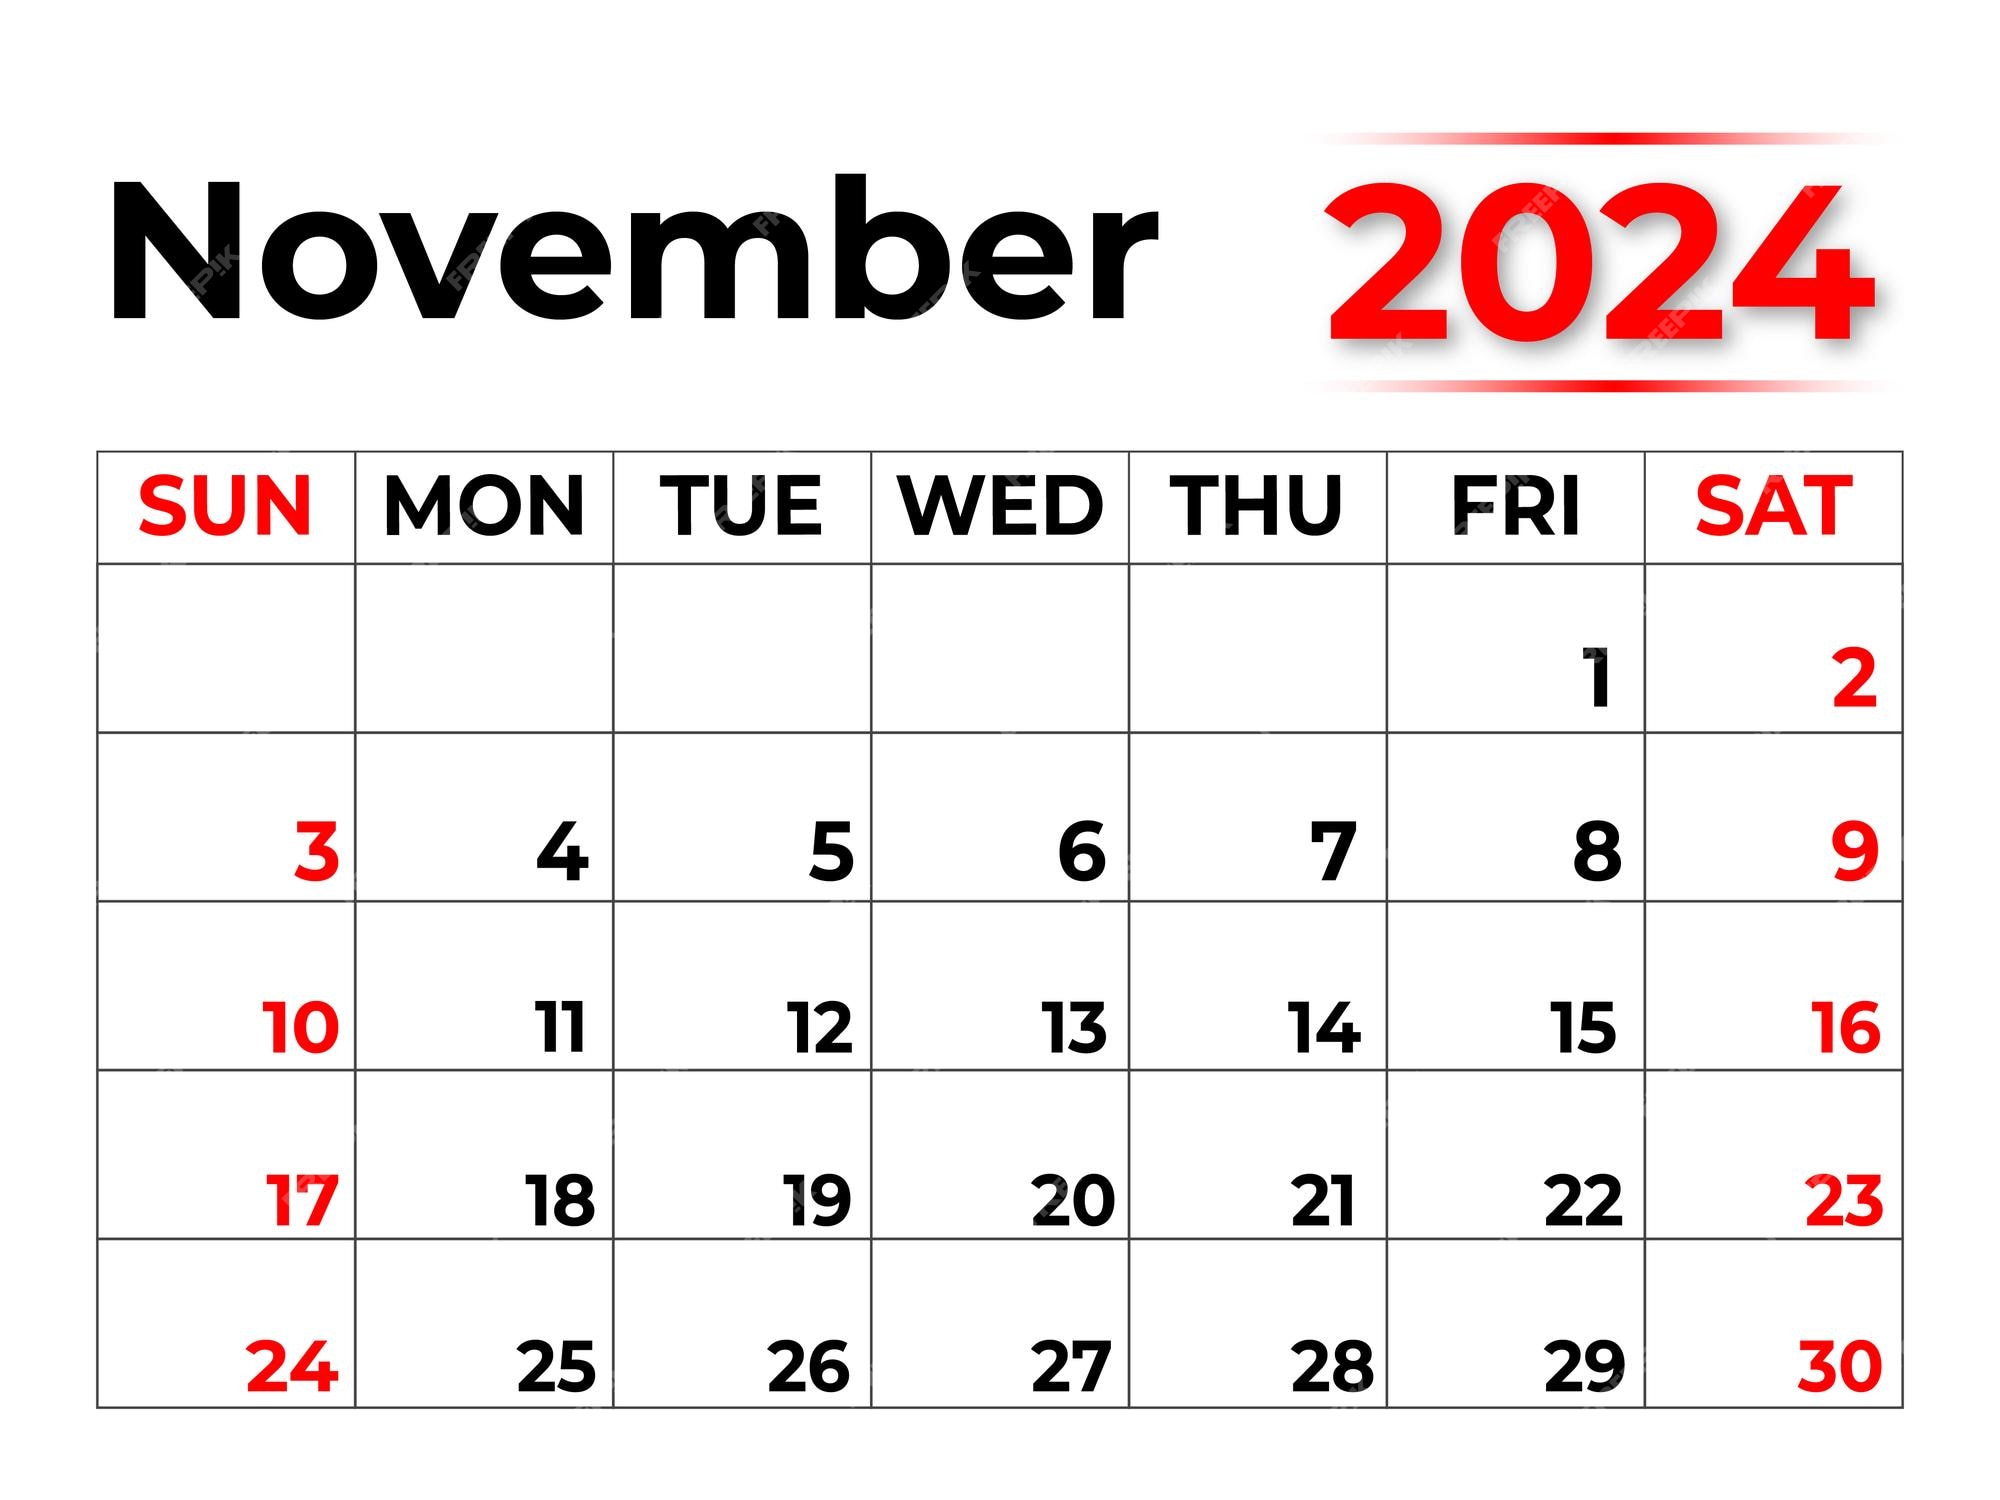 Calendario mensual para noviembre de 2024 la semana comienza en domingo